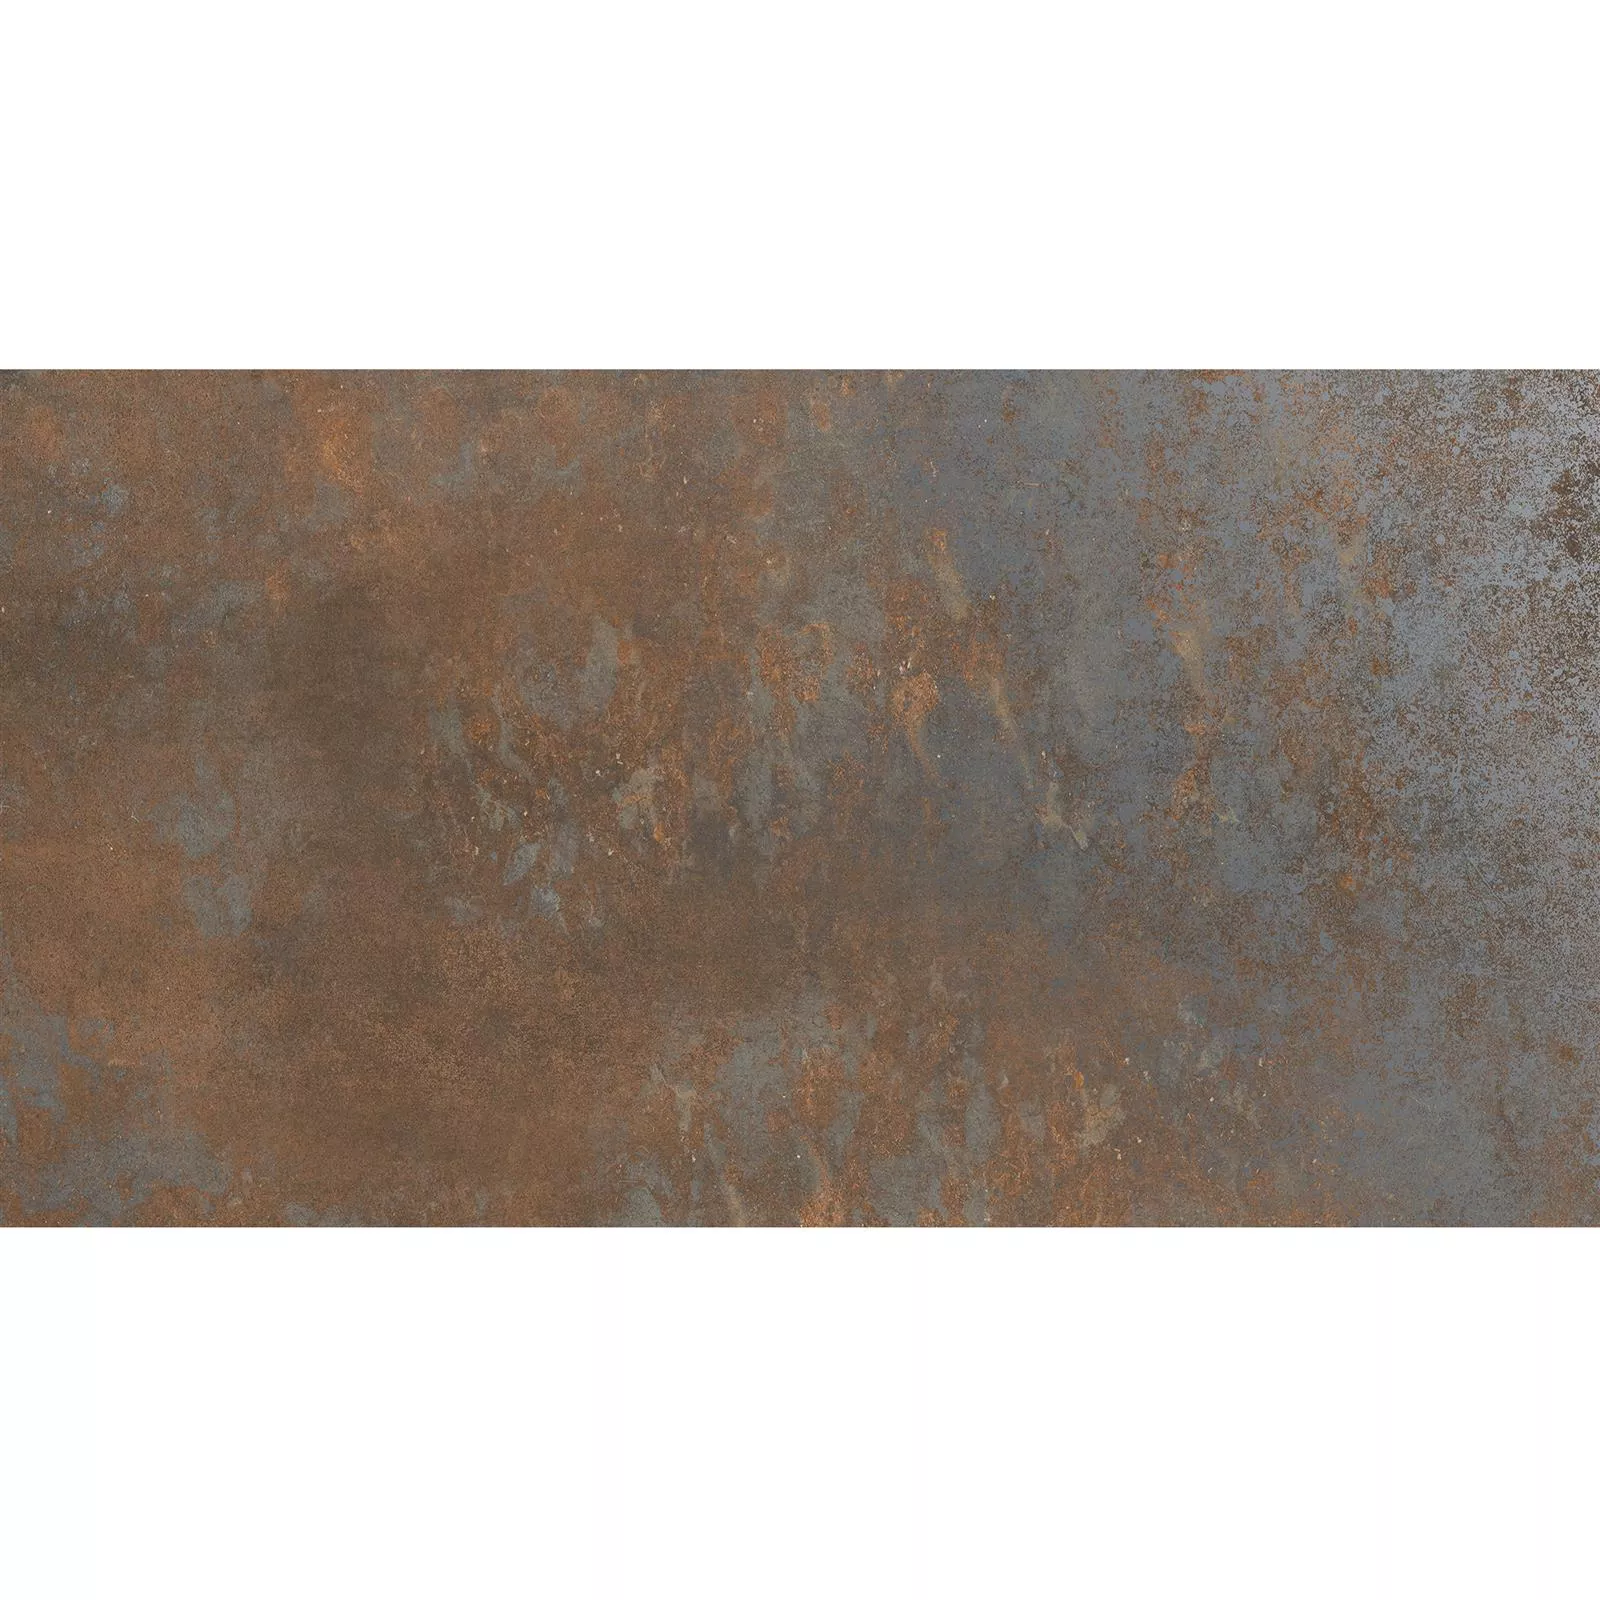 Sample Floor Tiles Sierra Metal Optic Rust R10/B 30x60cm